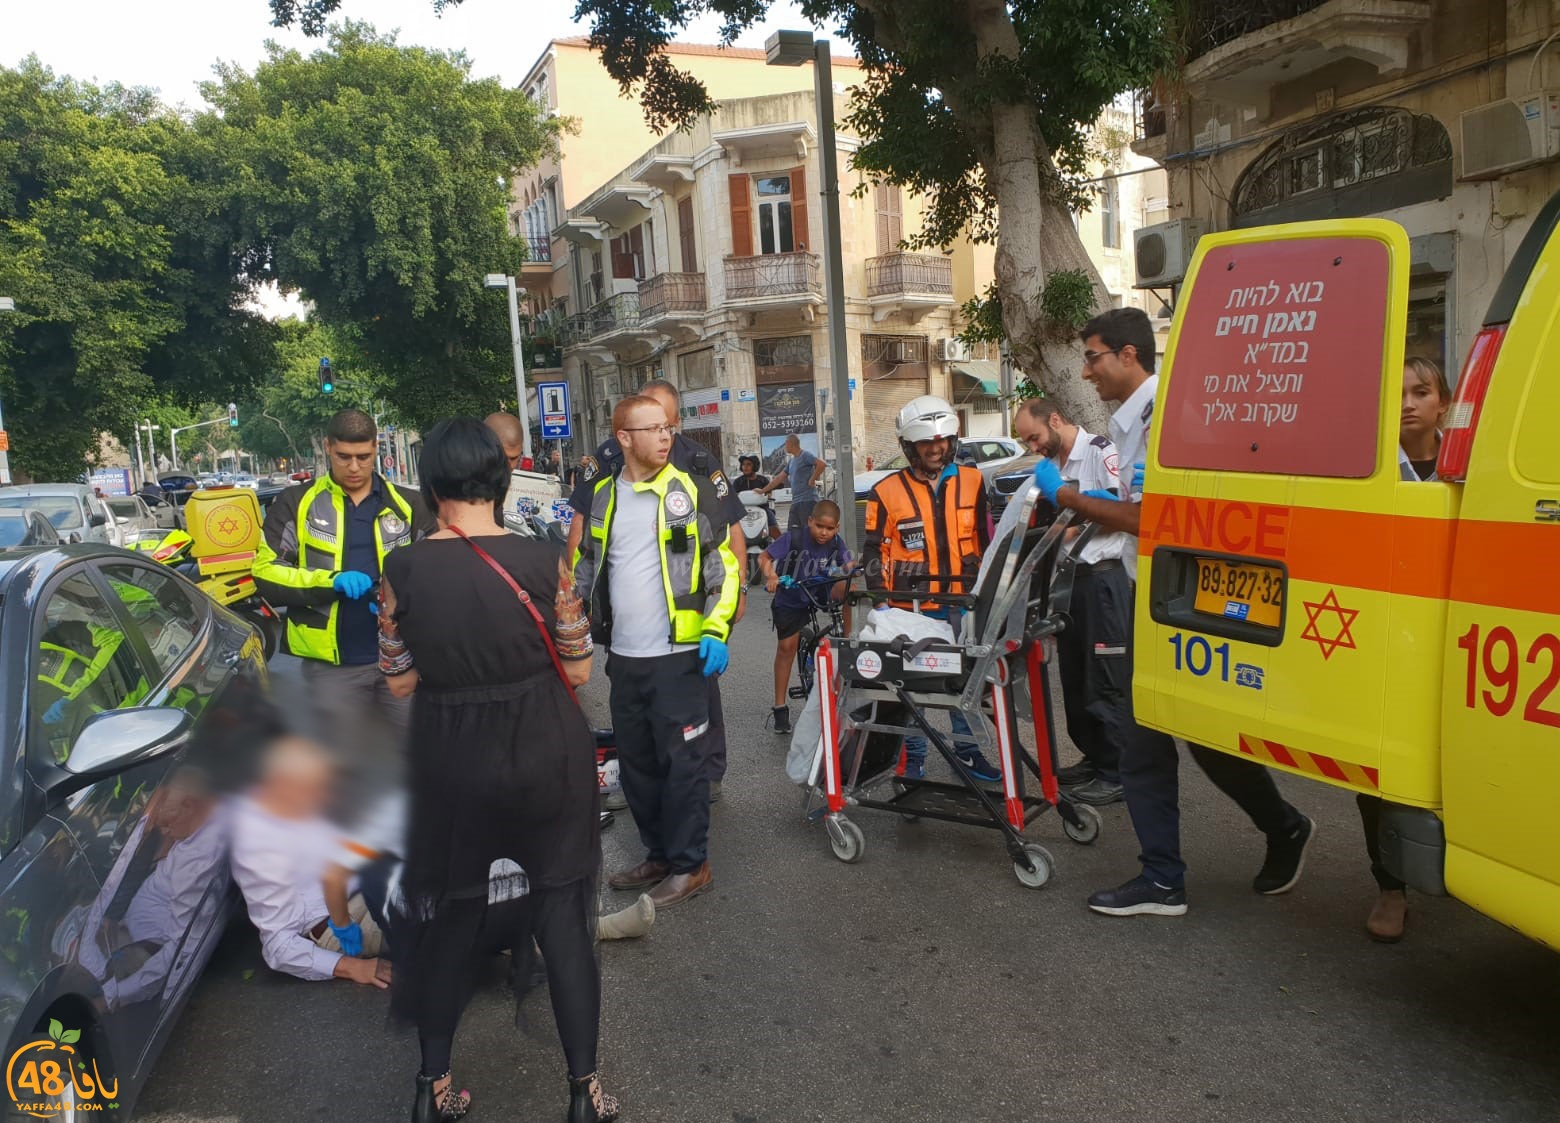  بالصور: اصابة شخص بأزمة قلبية بمدينة يافا والطواقم الطبيّة تُنقذ حياته 